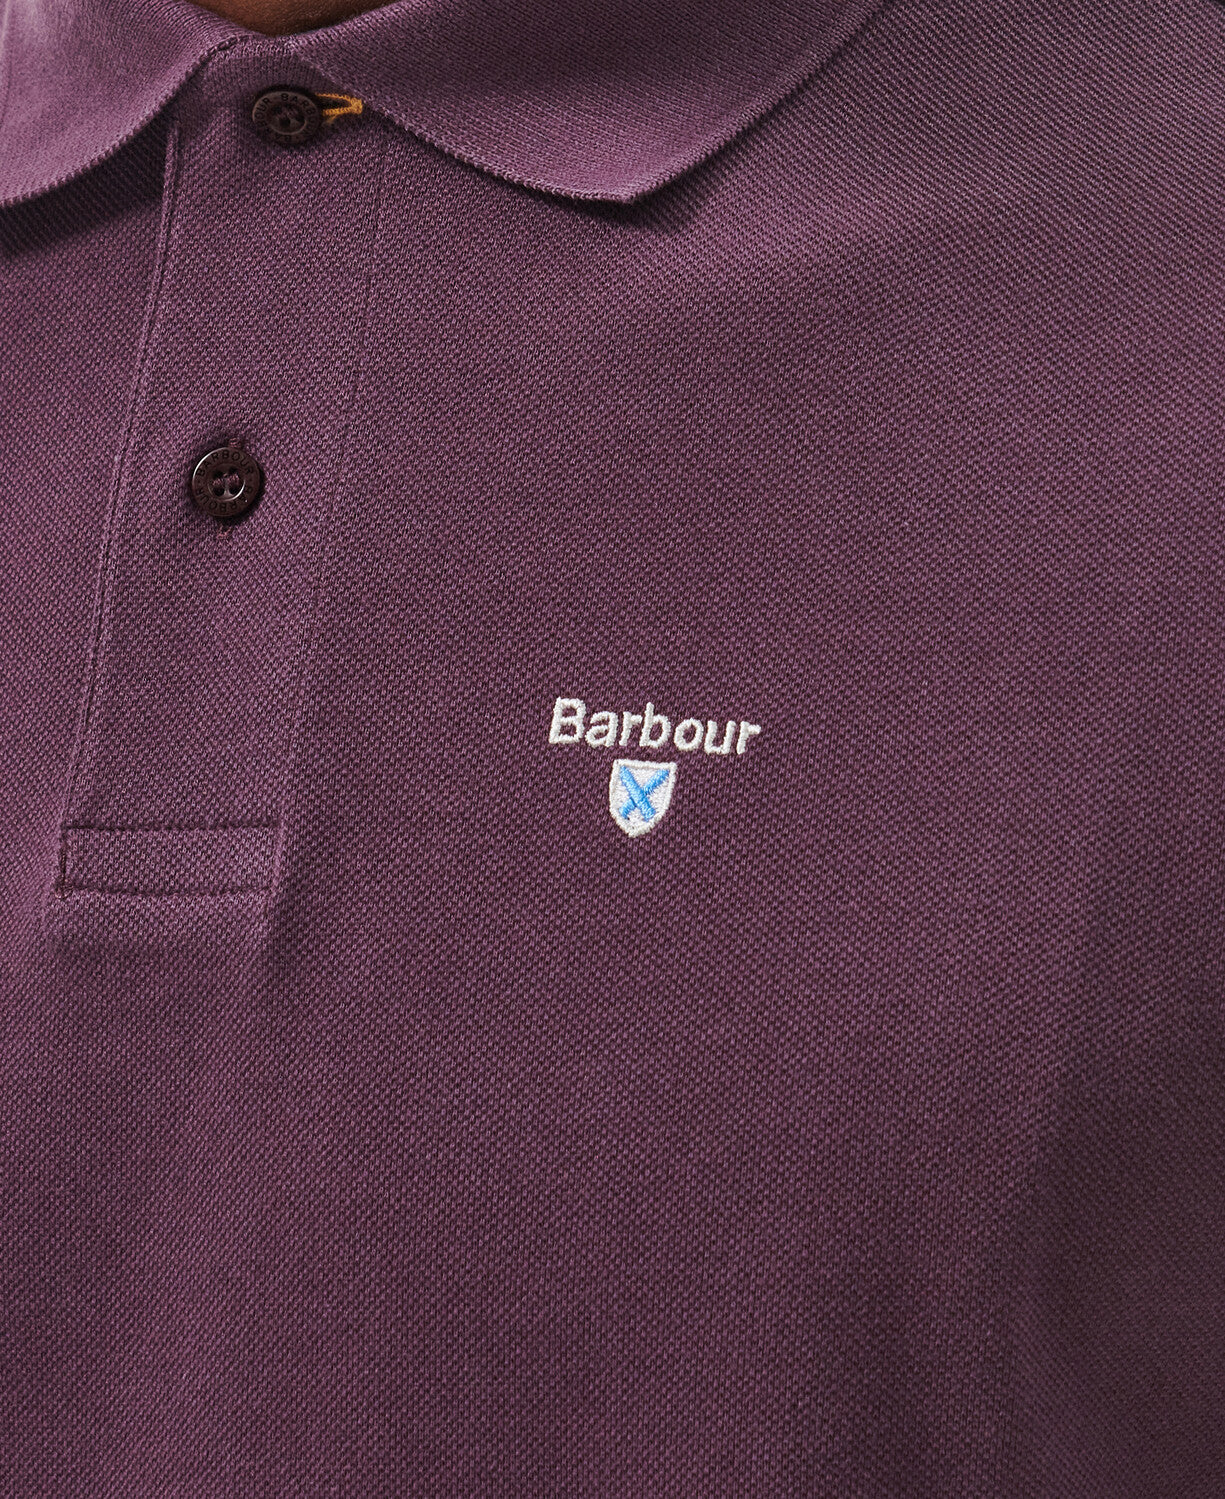 Barbour Tartan Pique Polo Shirt